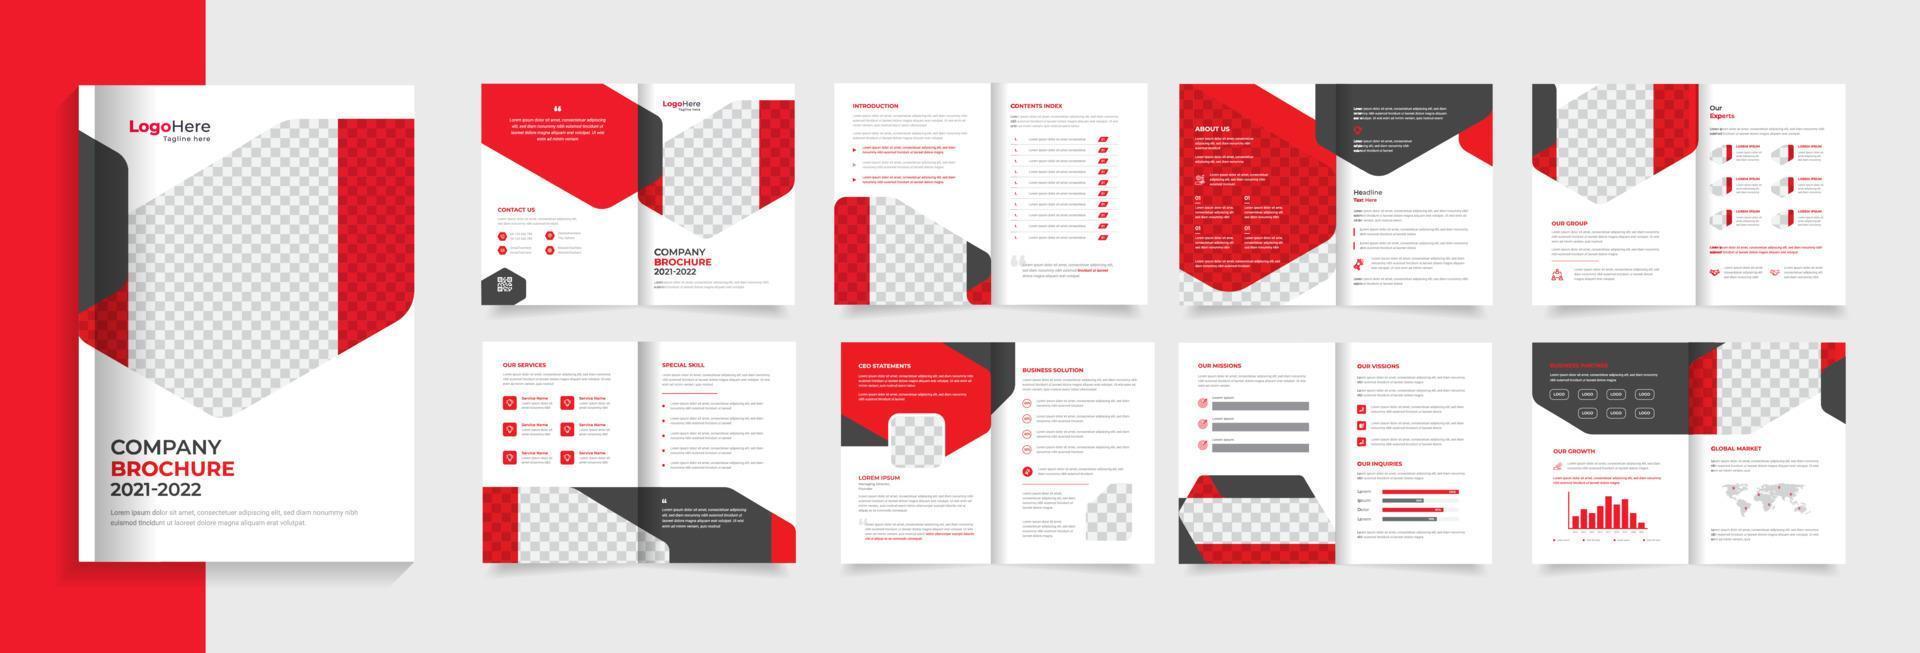 rode bedrijfsbrochure ontwerpsjabloon, modern met creatieve vormen premium vector